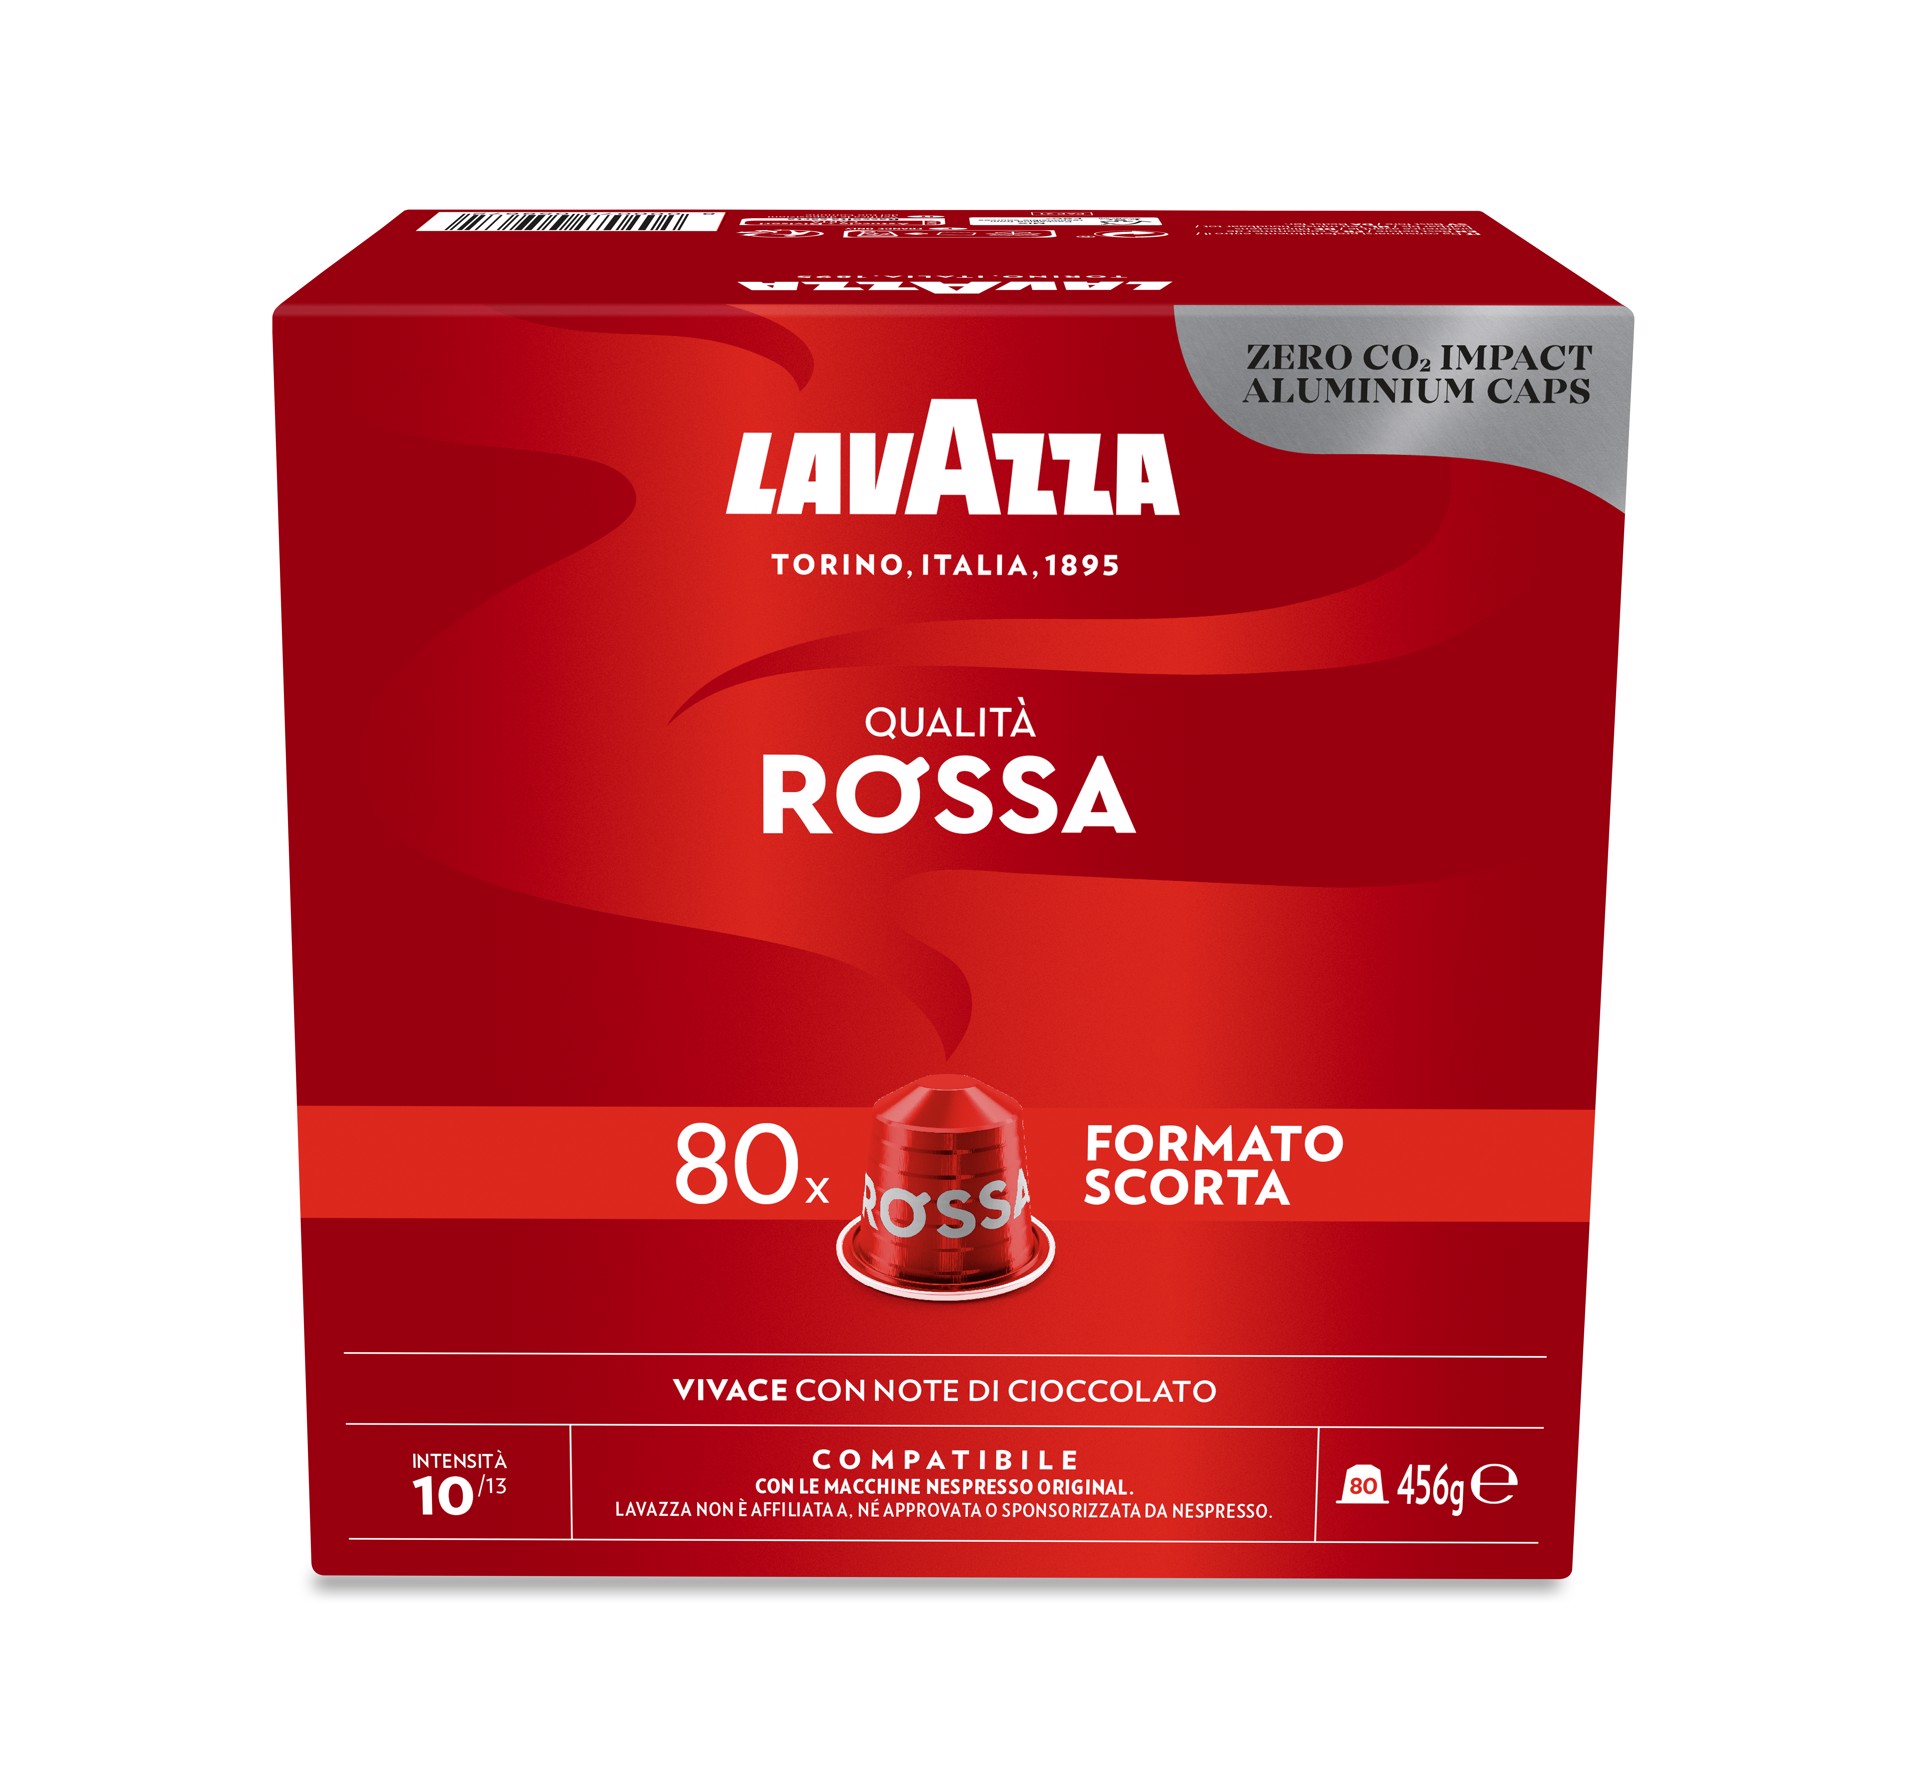 LAVAZZA Capsule Compatibili Nespresso Qualita Rossa, 80 Capsule, Capsule  per macchine Nespresso in Offerta su Stay On